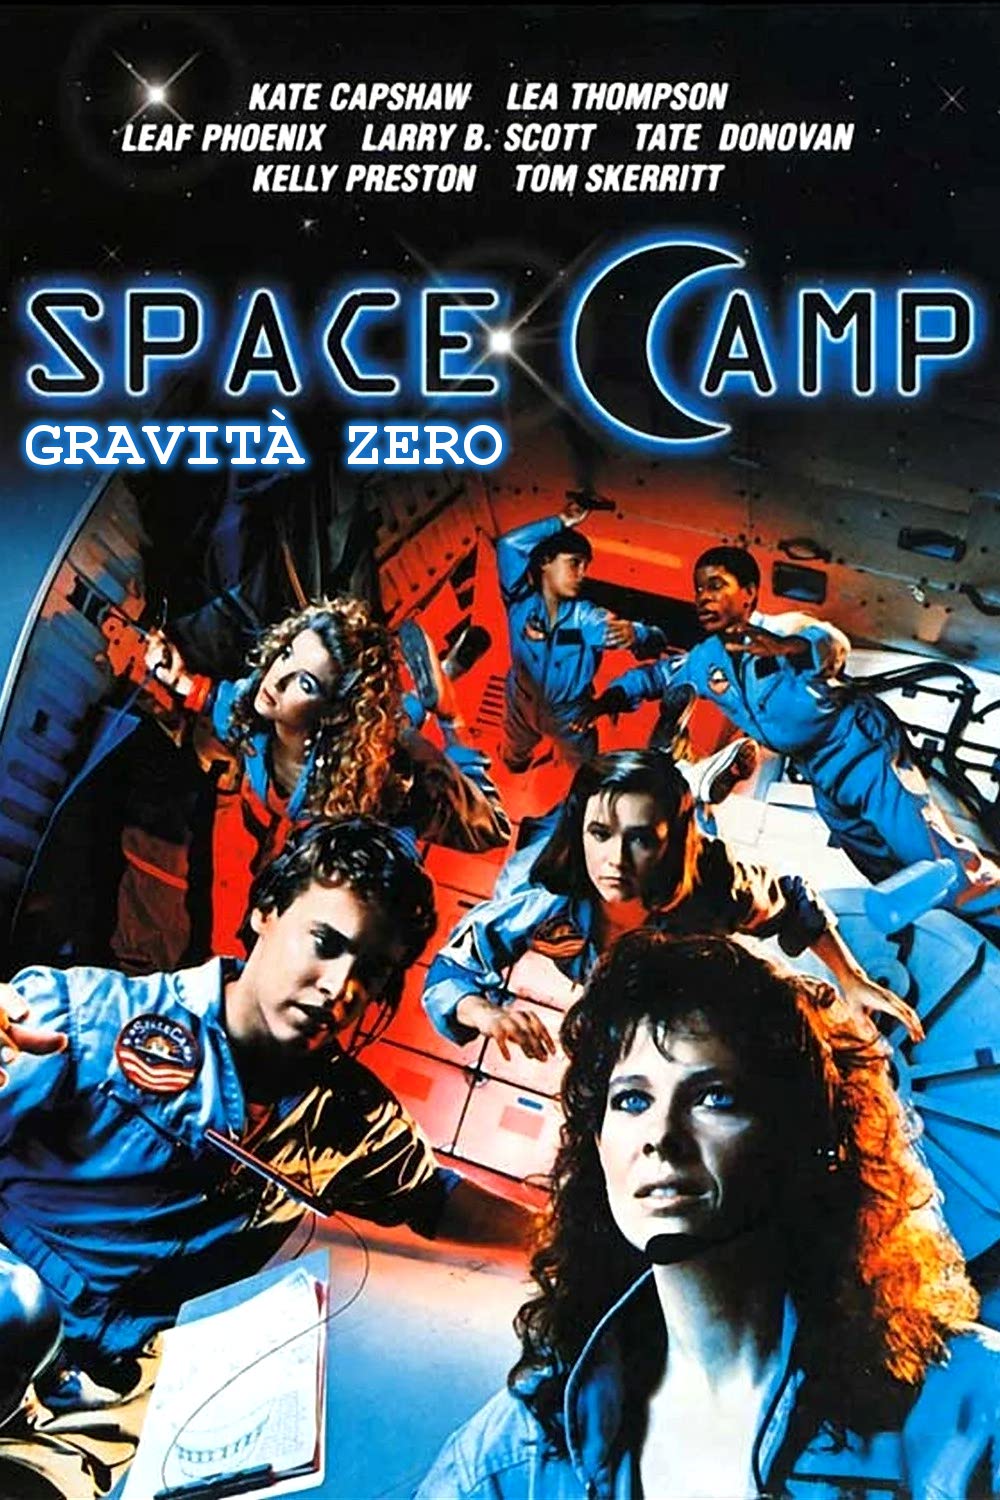 Space Camp – Gravità zero [HD] (1986)